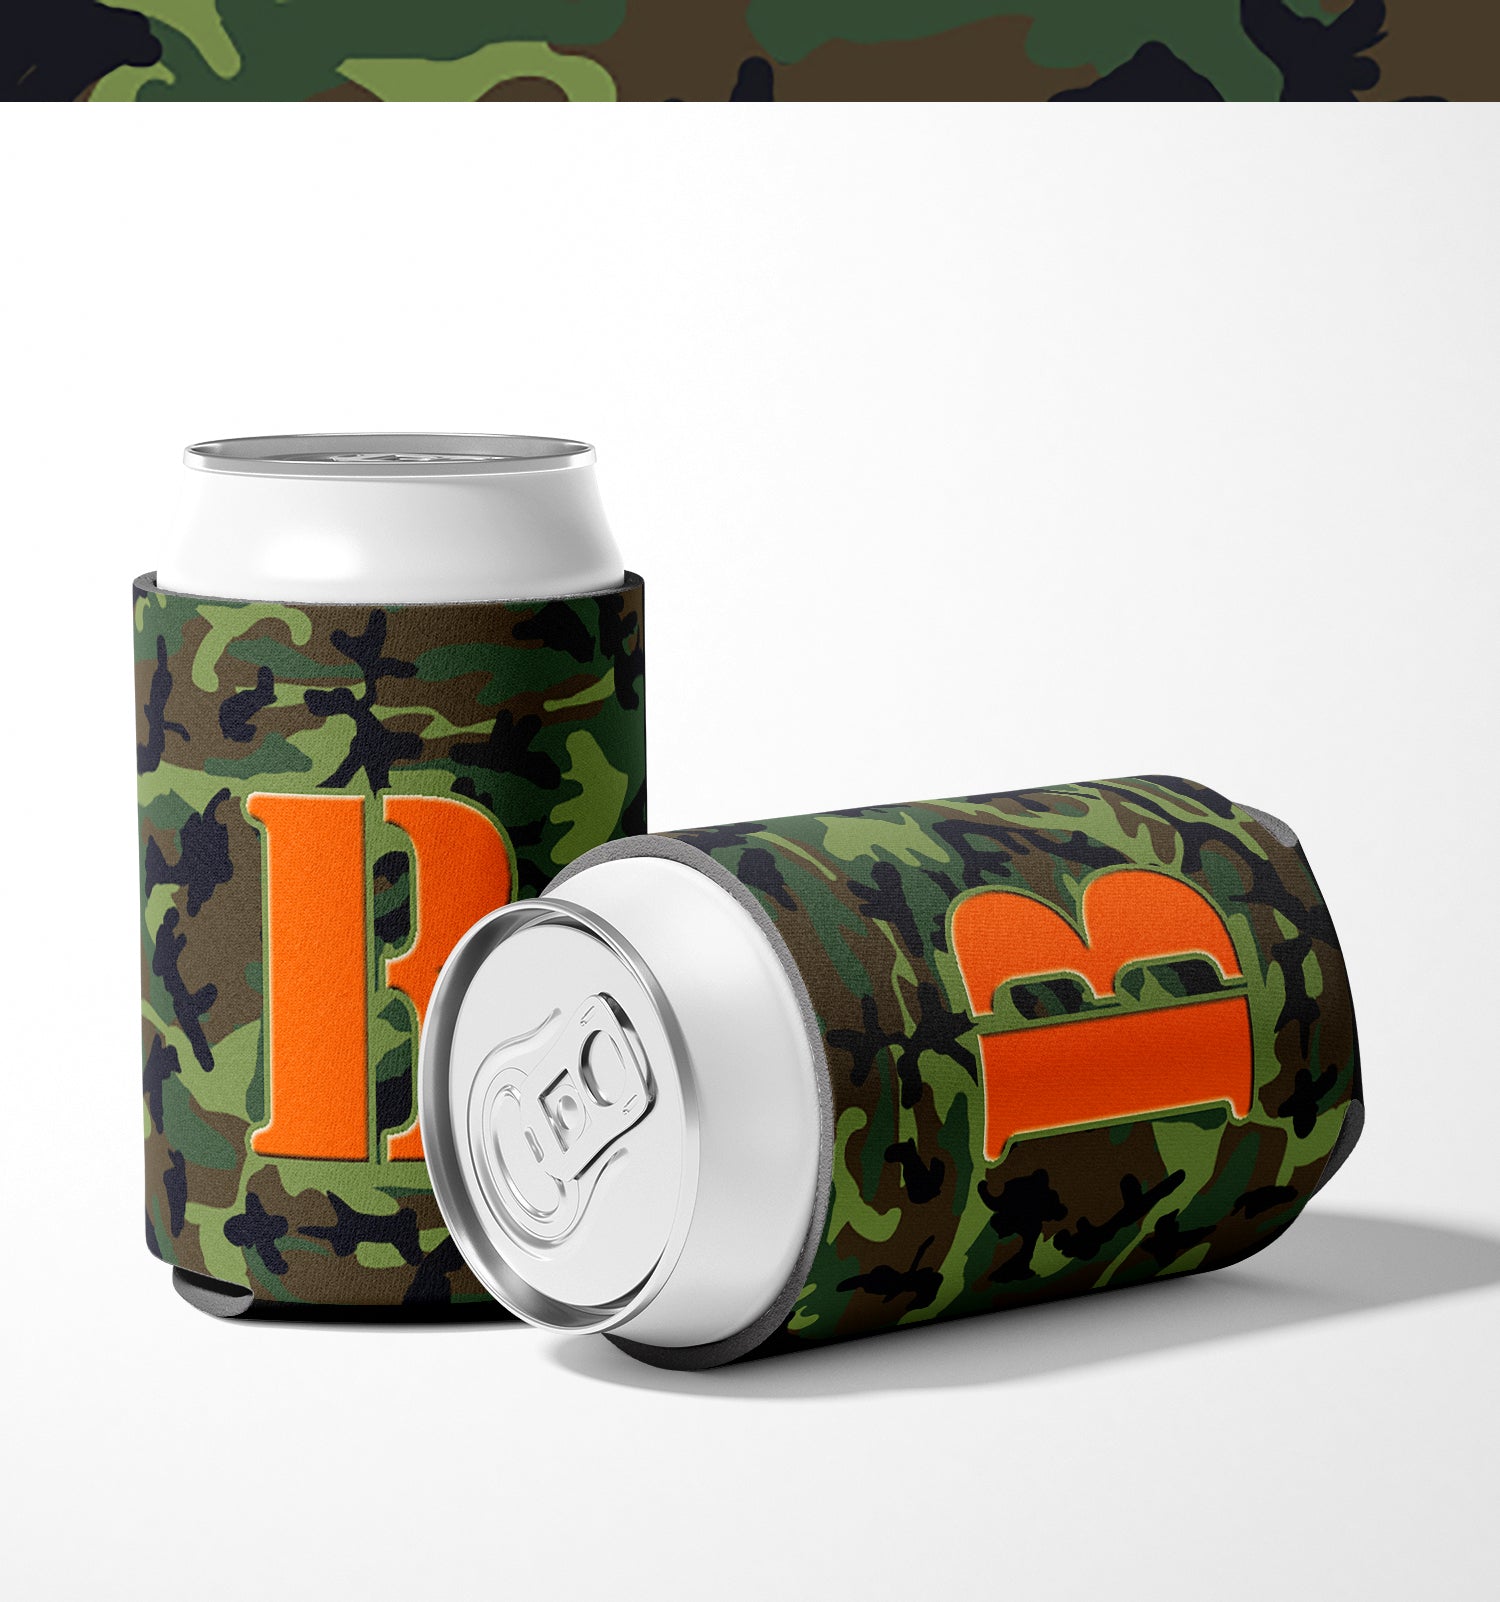 Letter B Initial Monogram - Camo Green Can or Bottle Beverage Insulator Hugger